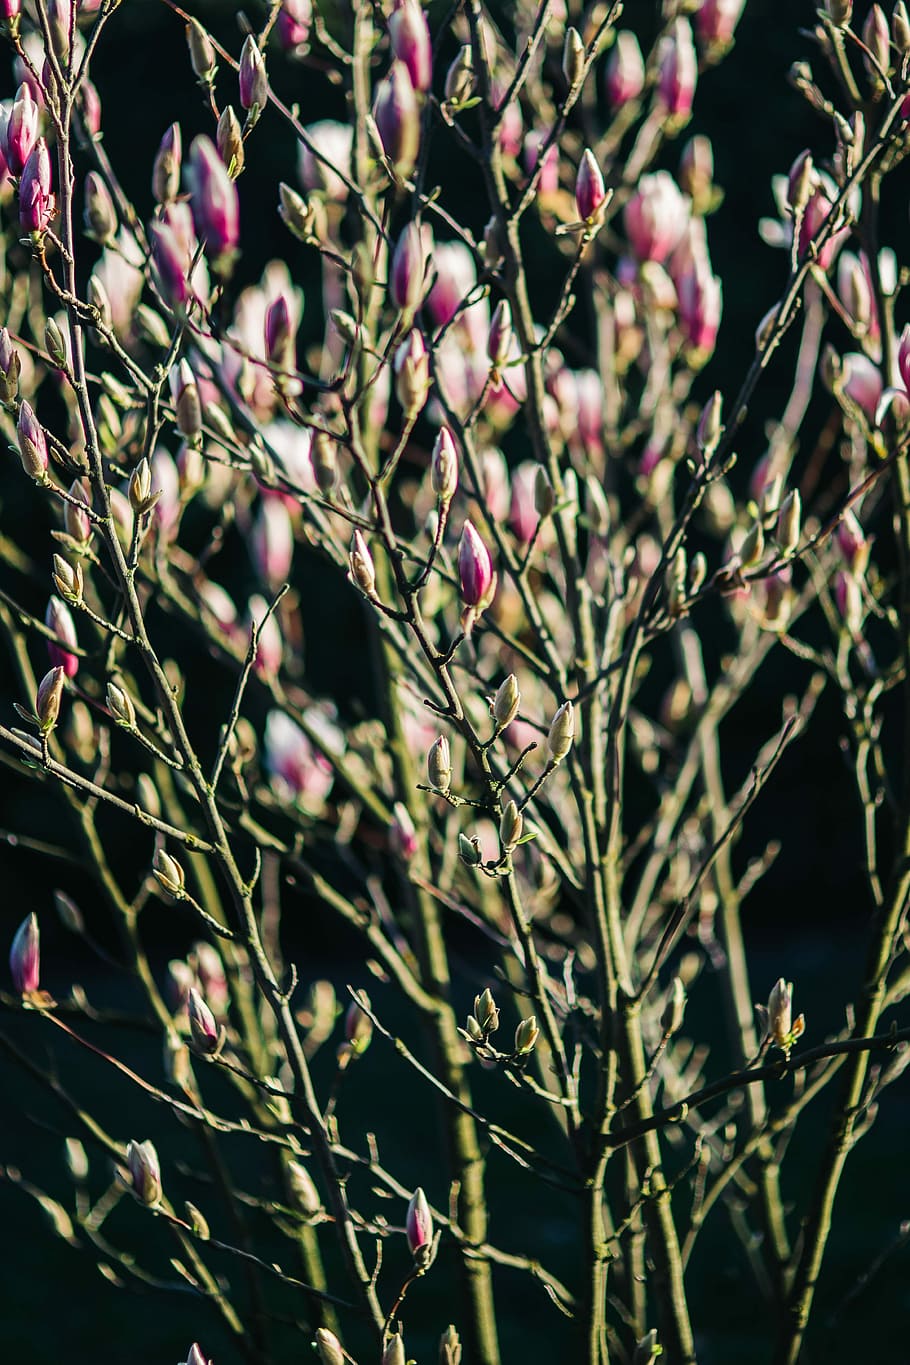 ピンクの春の花, ピンク, 春の花, 花, 植物, 青空, 開花, 春, 小枝, 枝